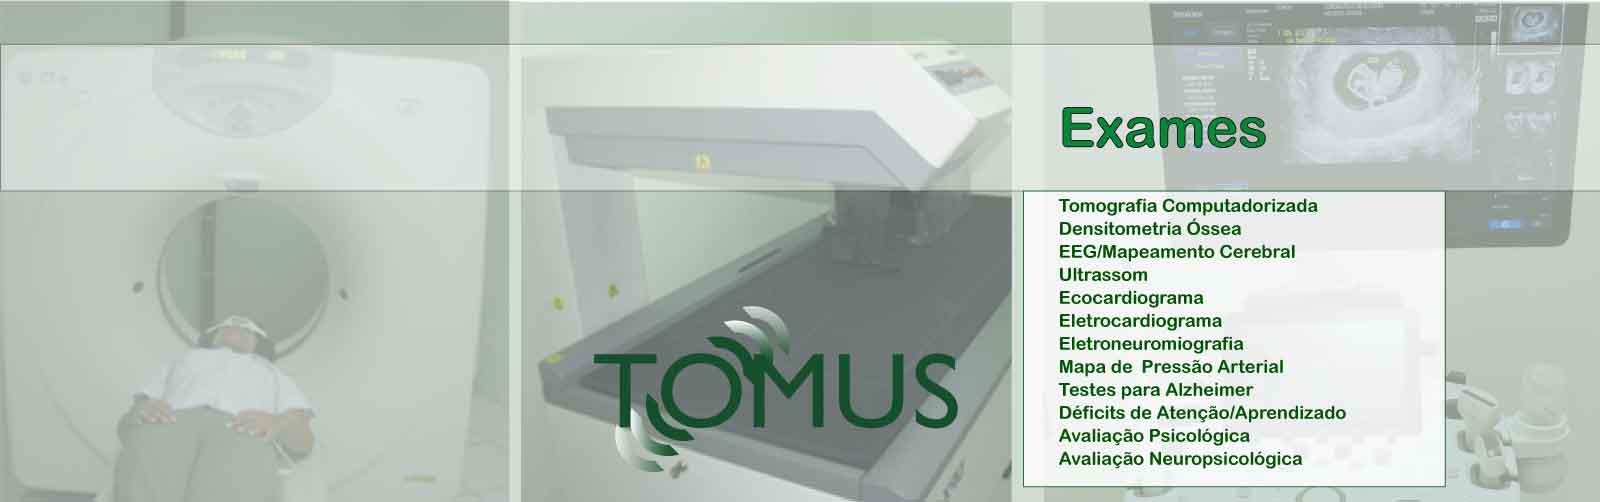 Tomus e Imagem - Exames de Diagnóstico por Imagem